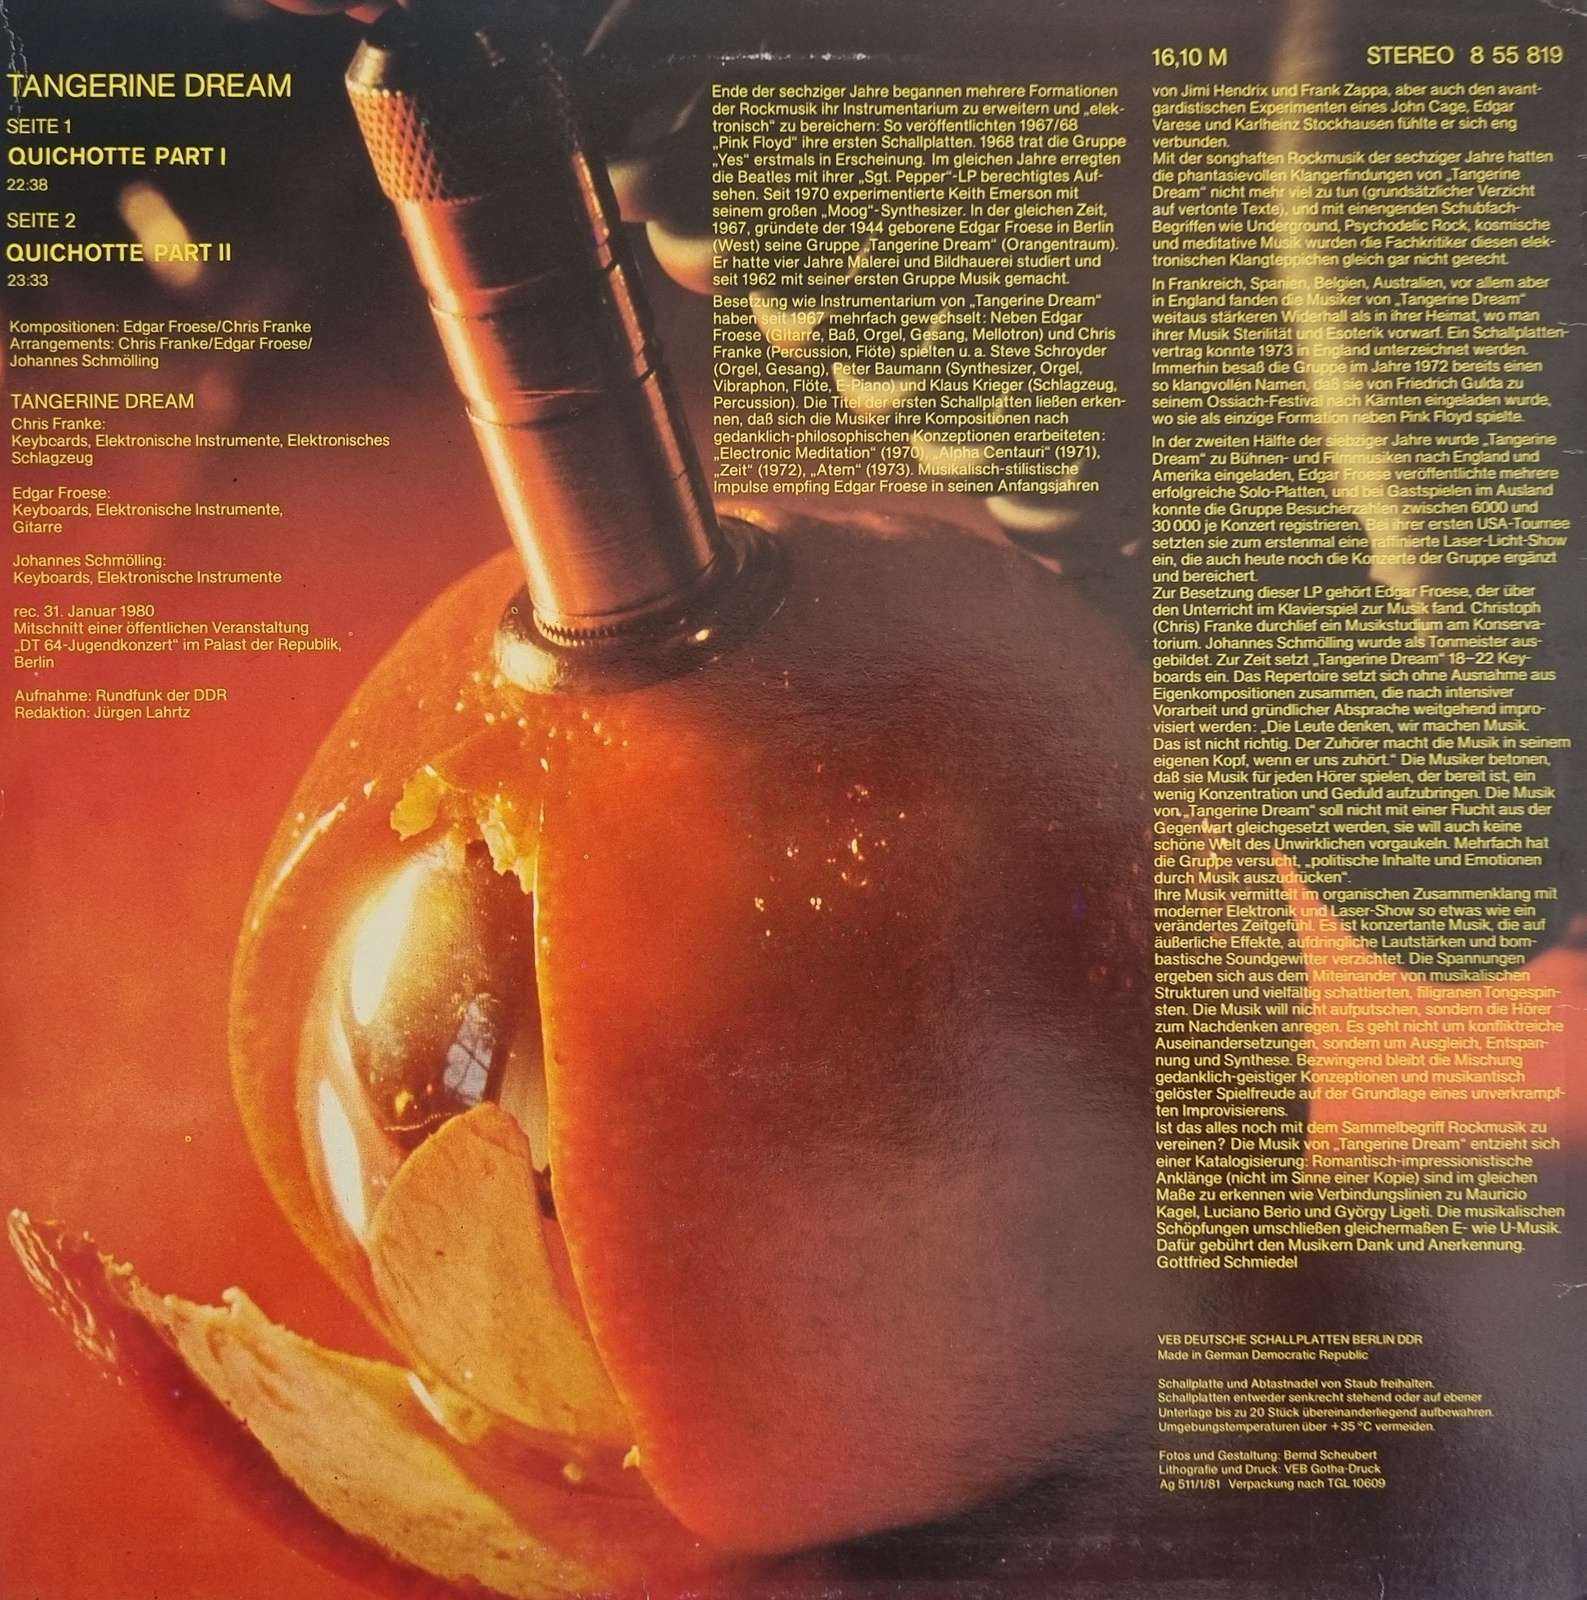 Tangerine Dream - Amiga (LP)